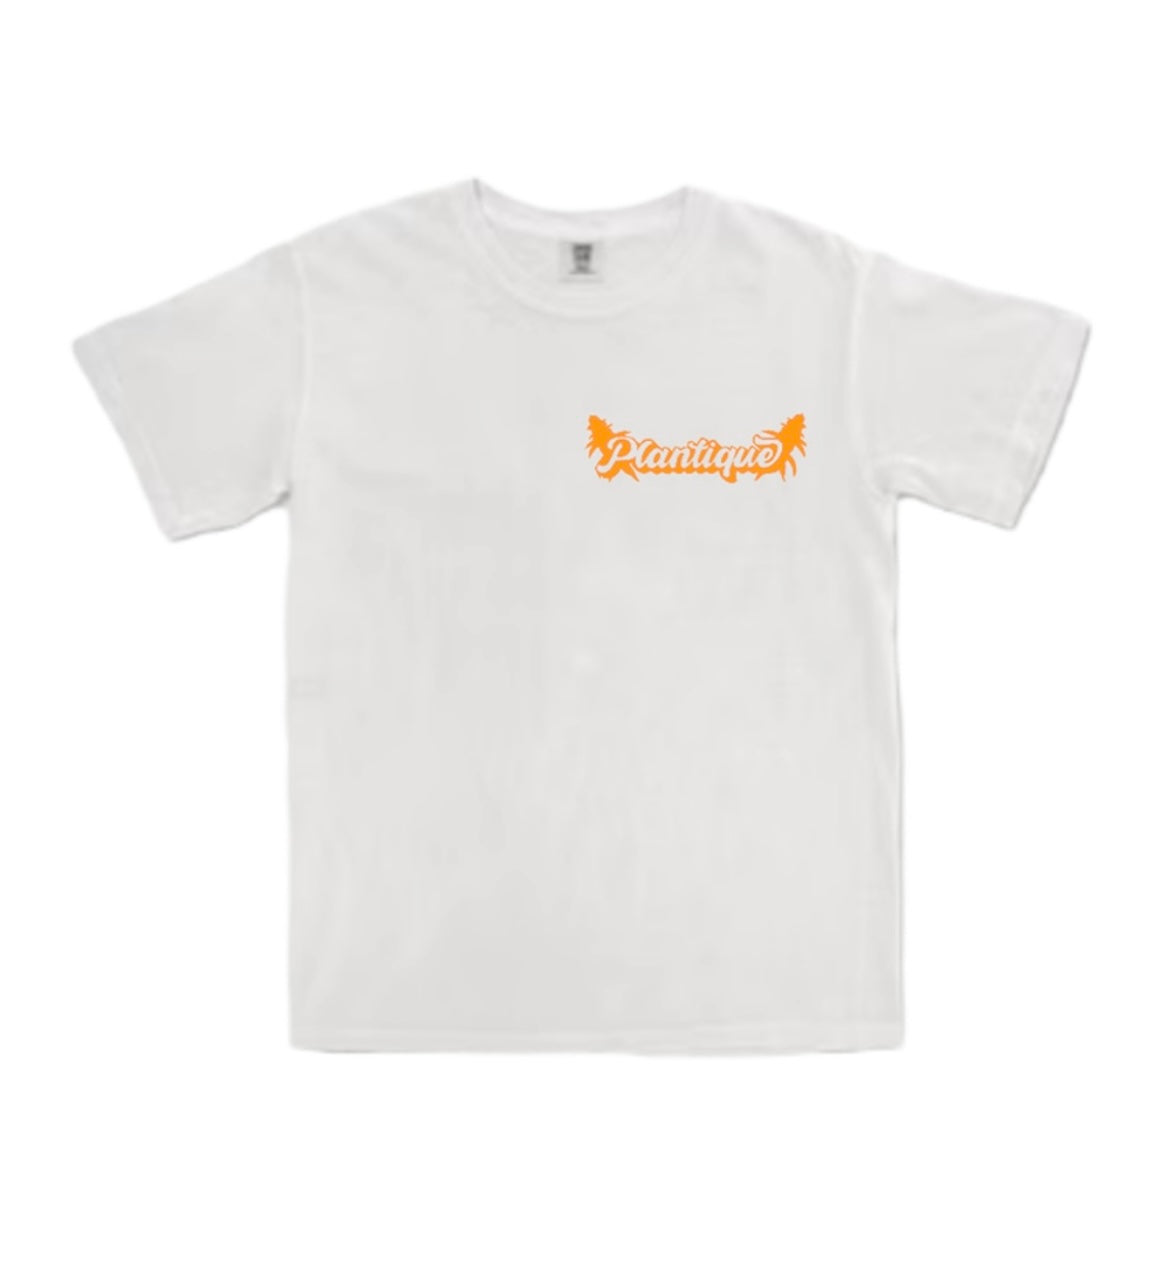 Plantique Classic T-Shirt - White/Orange front